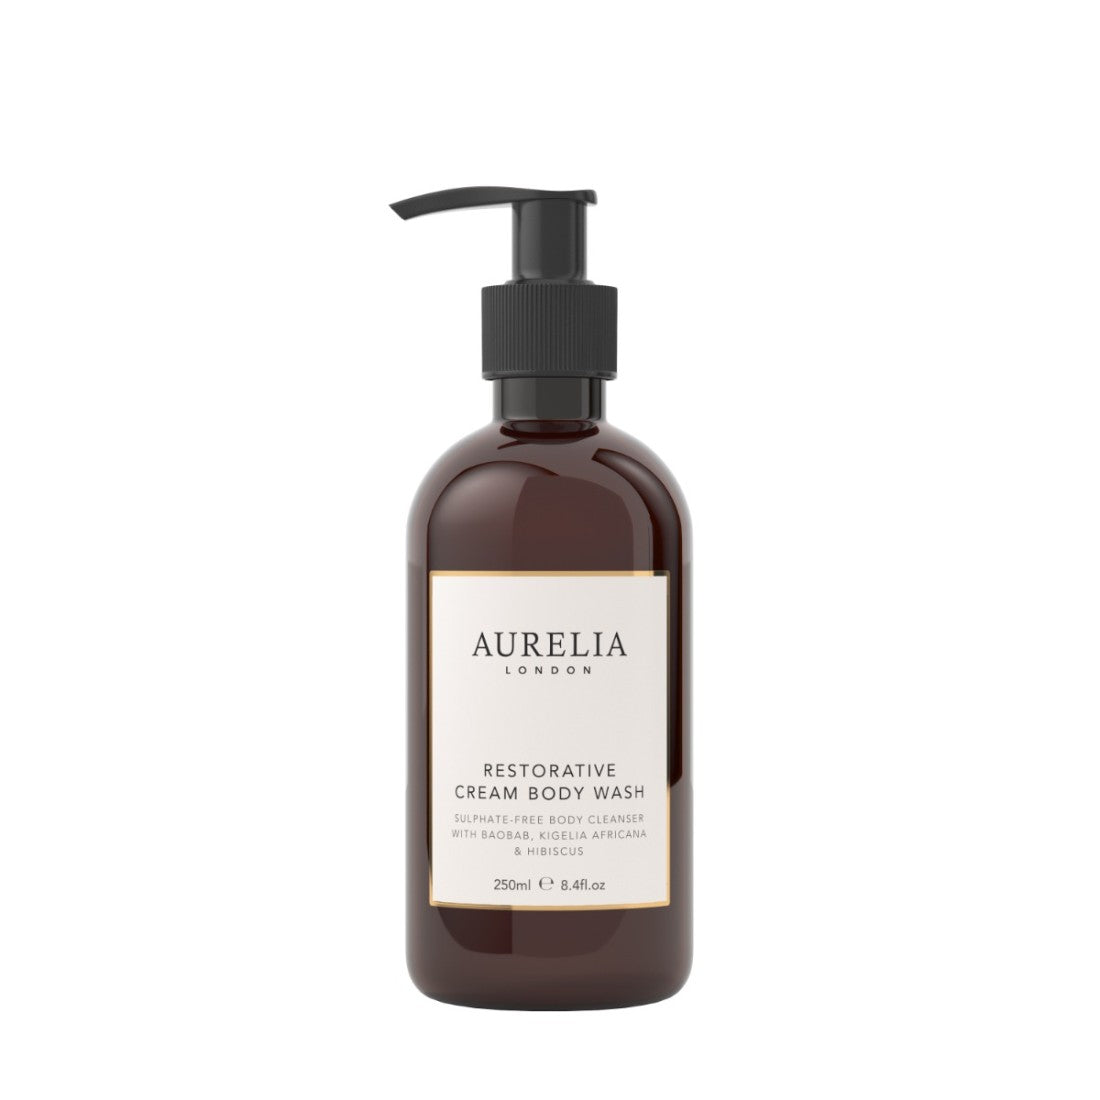 Aurelia London Restorative Cream Body Wash - 250ml